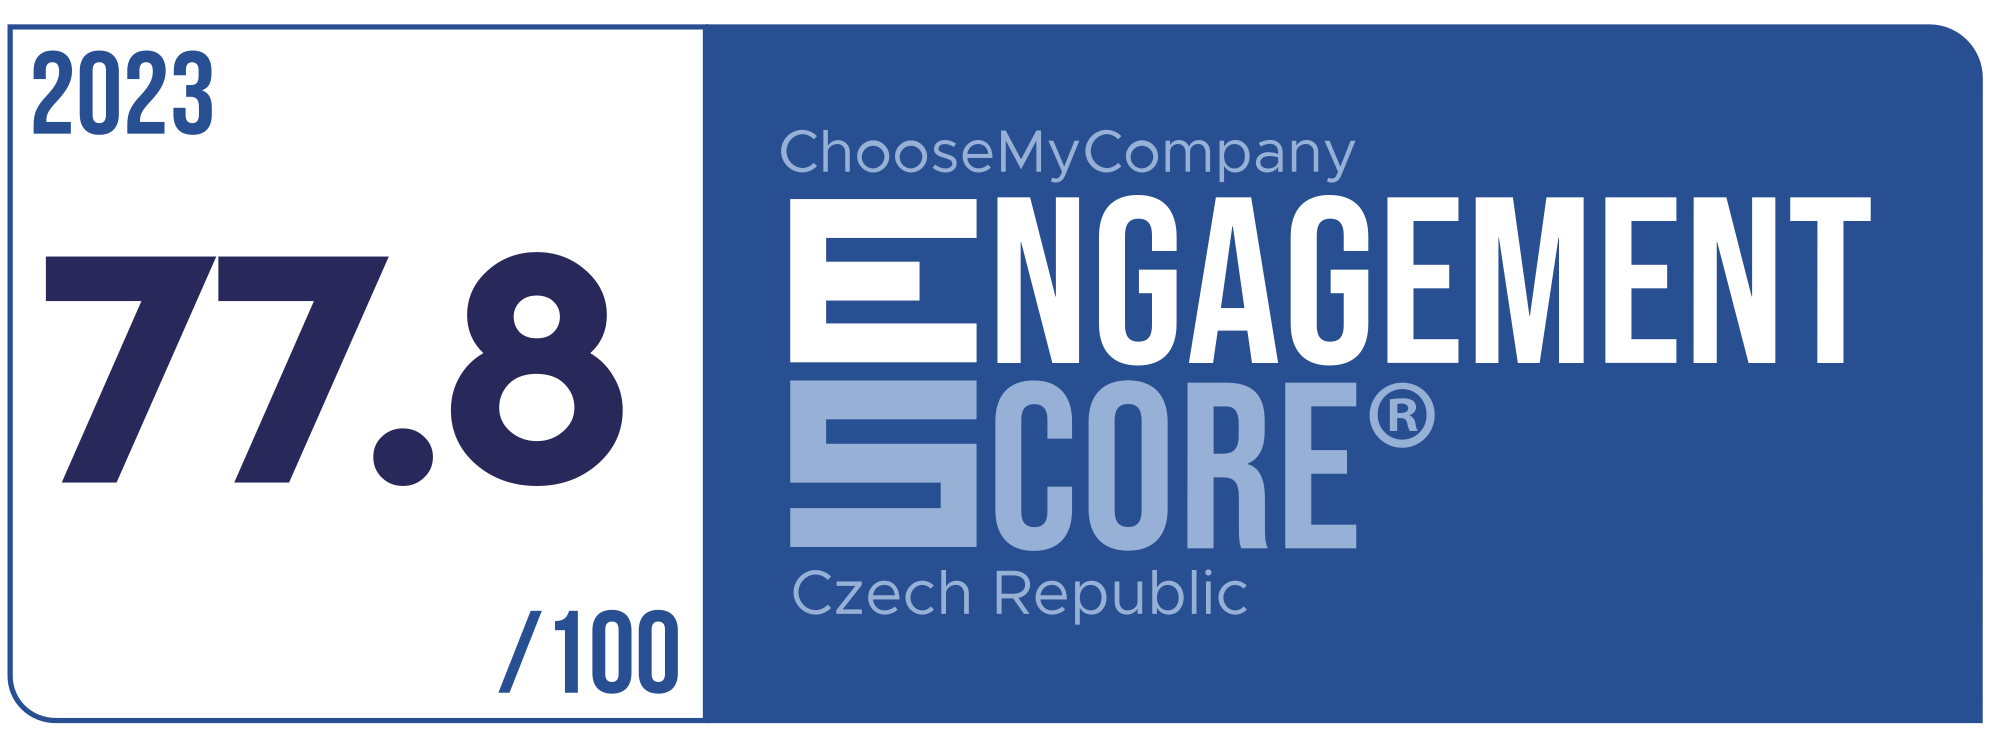 Label Engagement Score 2023 Czech Republic